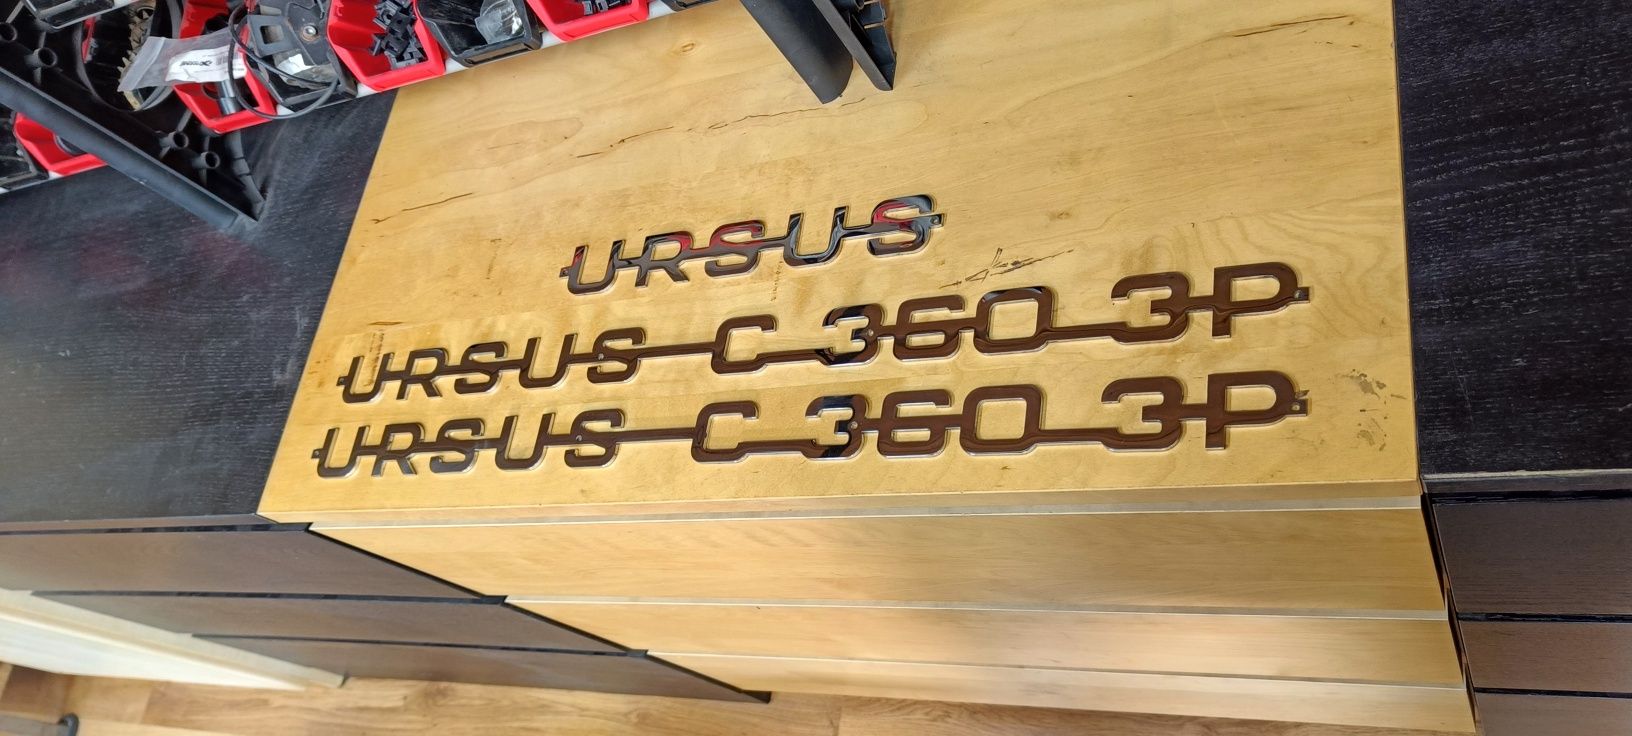 Polerowane napisy na maskę Ursus C-360 3P stal nierdzewna 3mm logo